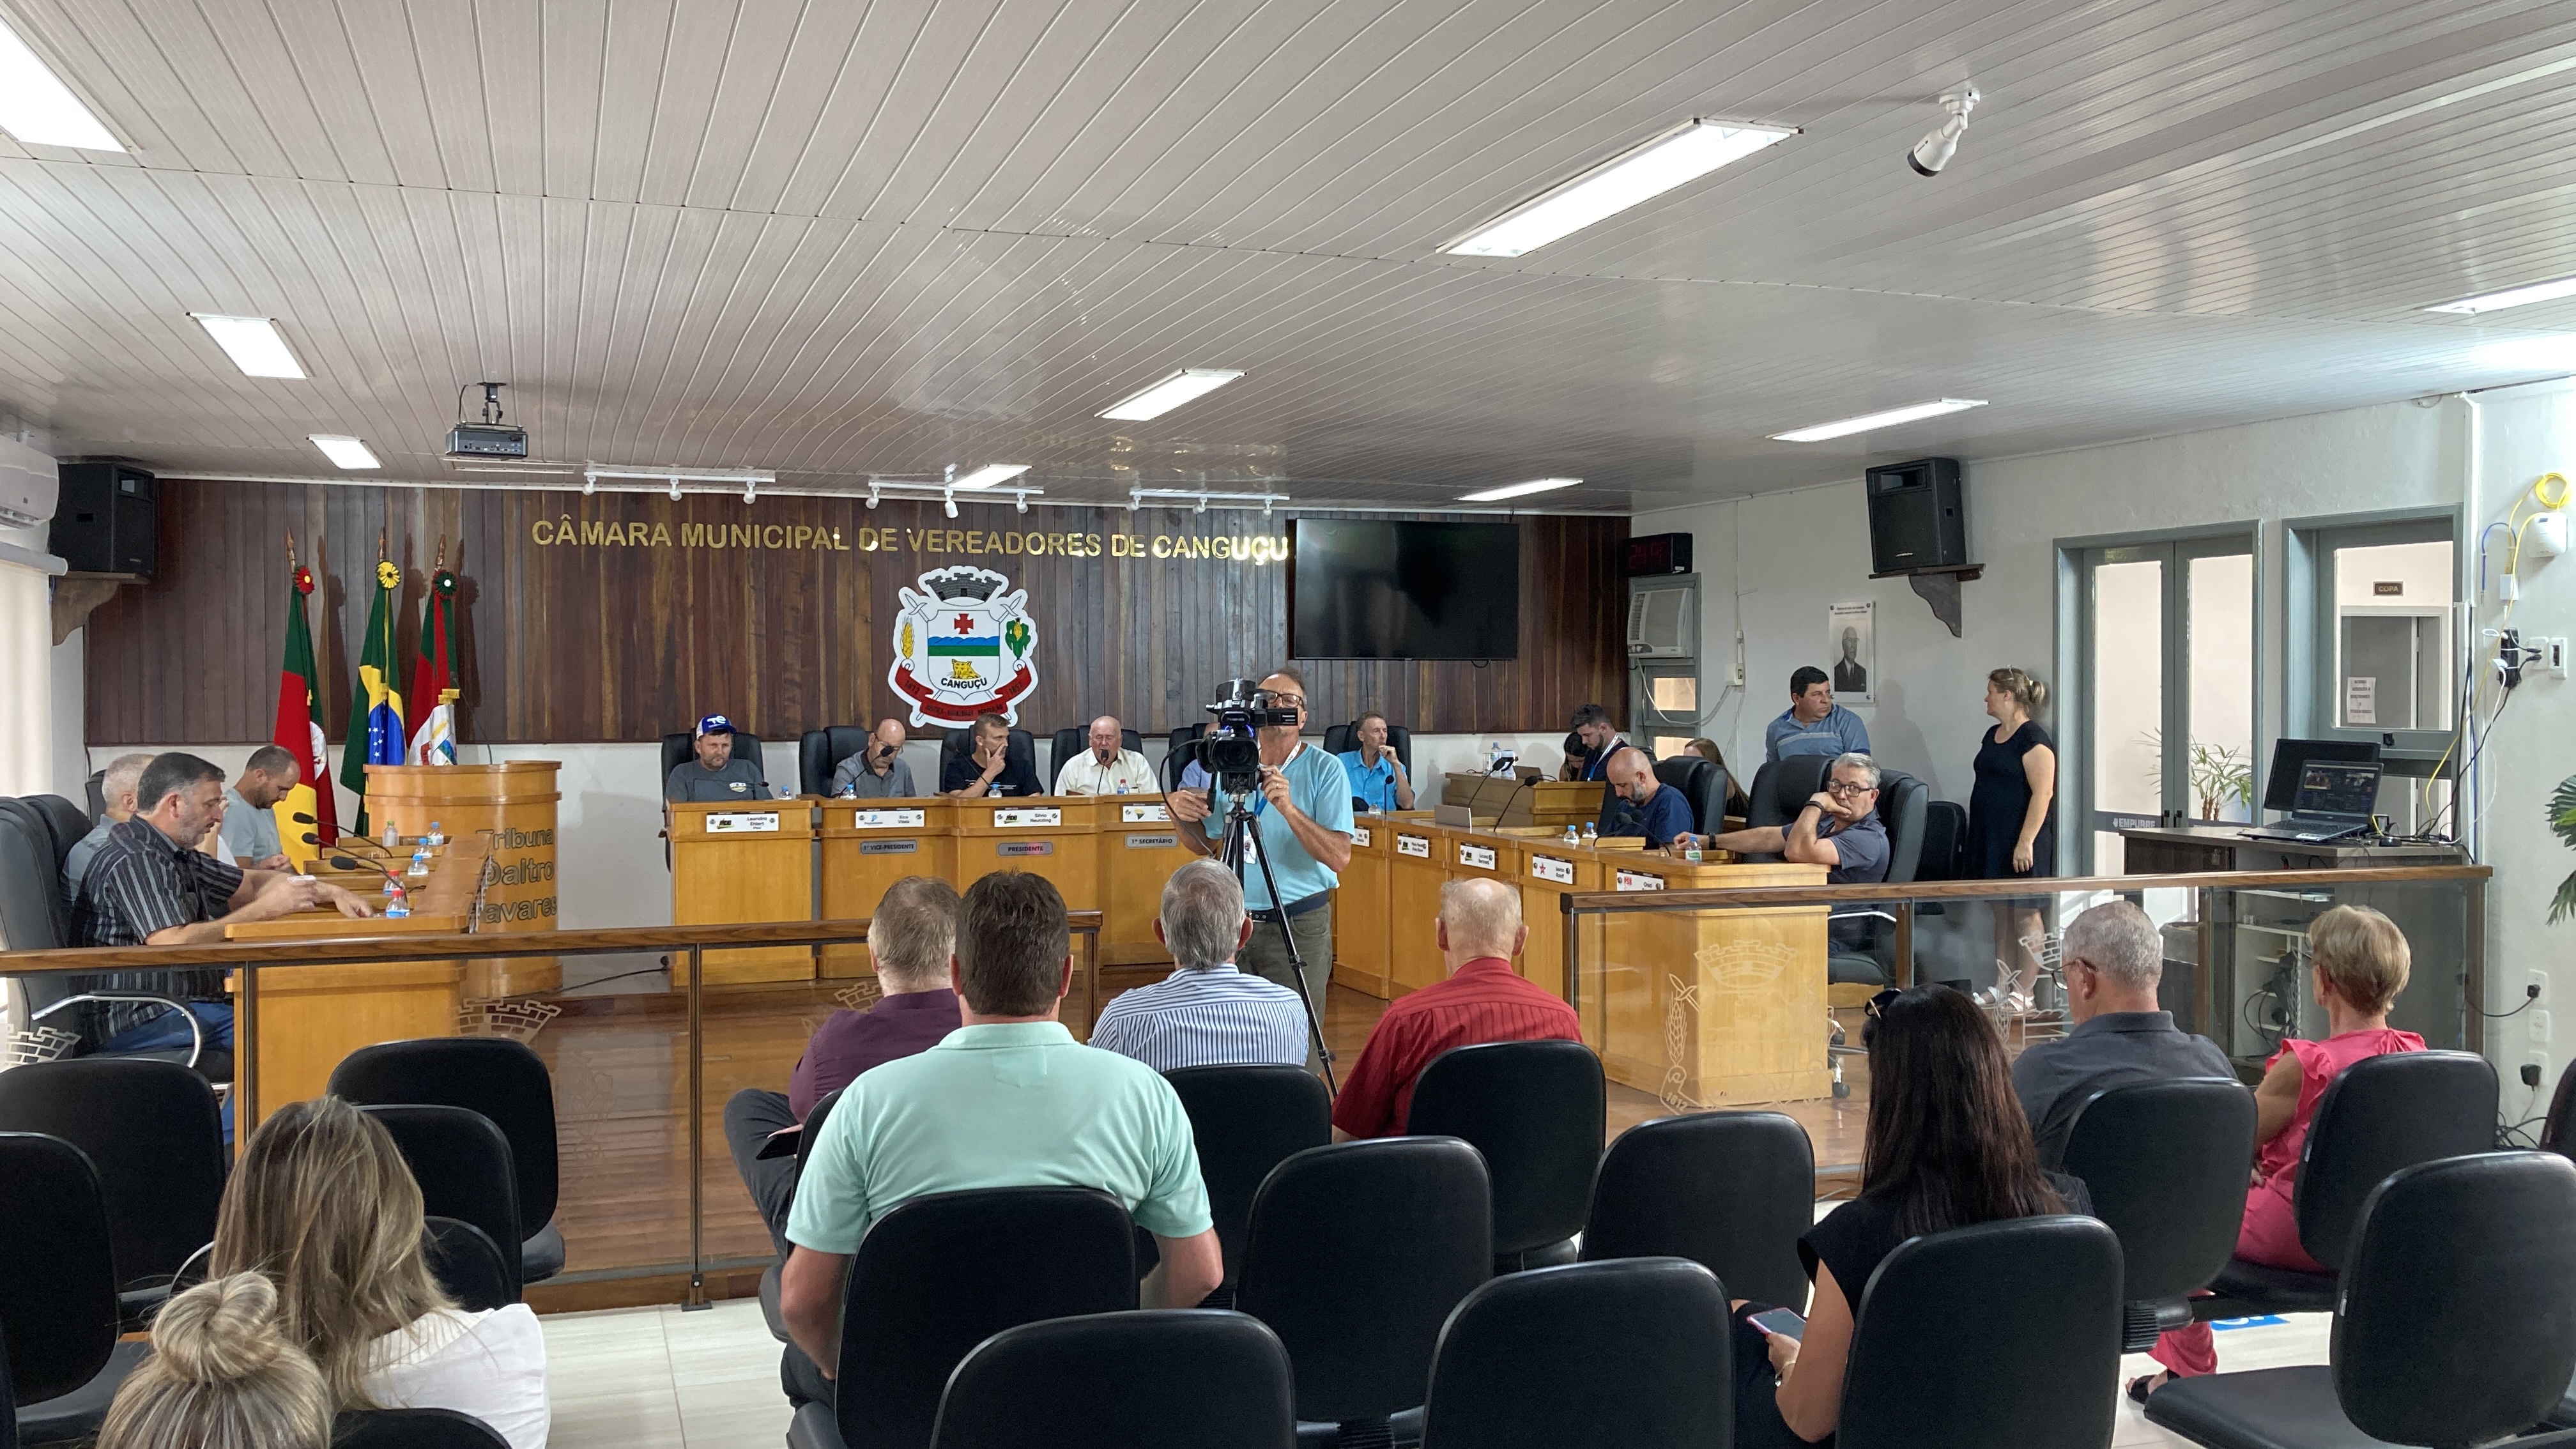 Audiência Pública debate as tarifas de pedágio na região - Câmara de vereadores de Canguçu